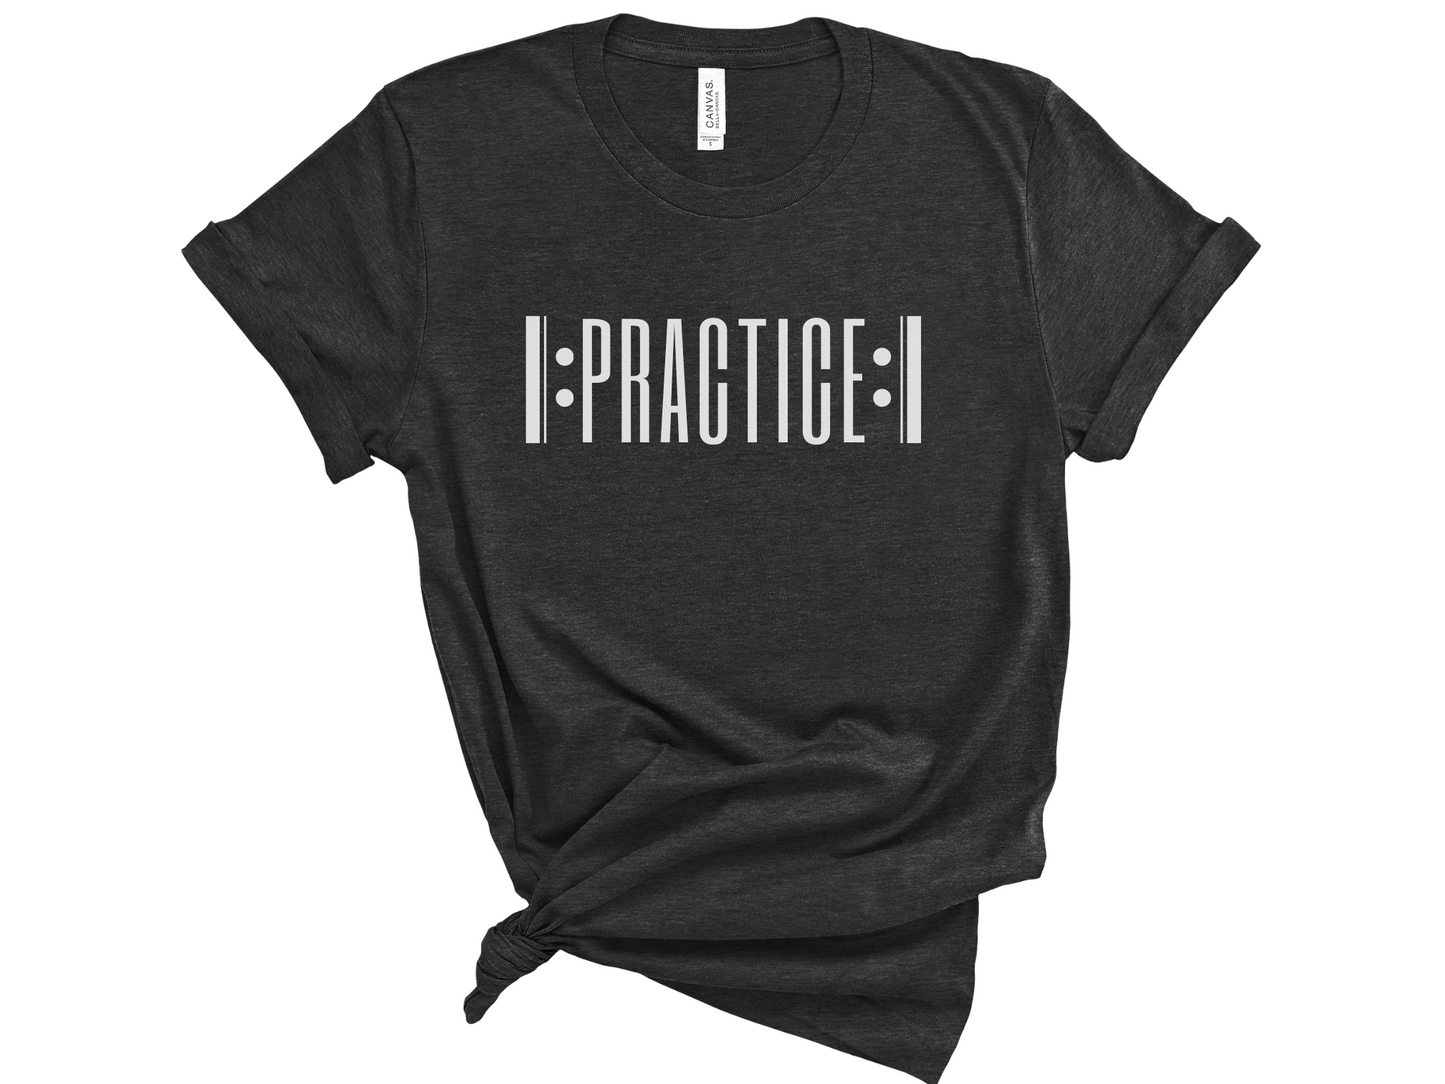 Practice Repeat Unisex T-Shirt